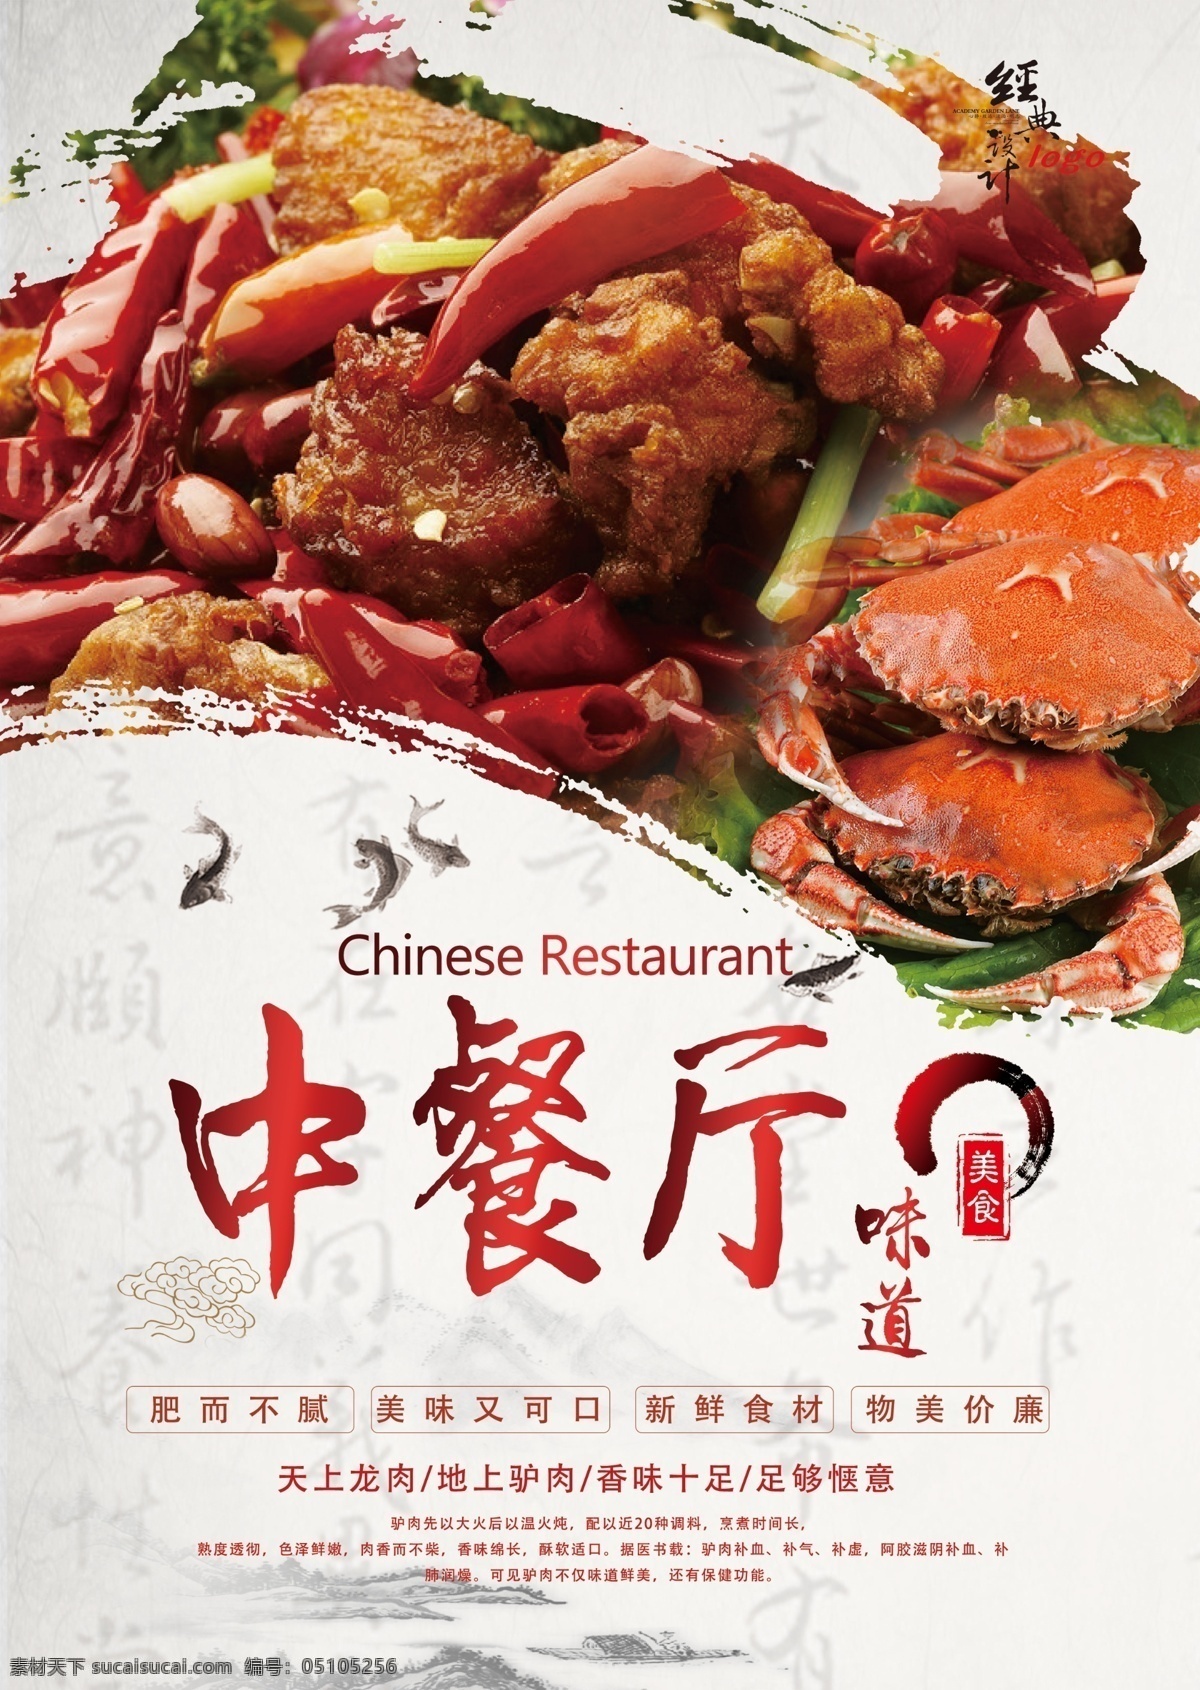 中餐厅宣传单 中餐厅传单 传单 美食餐饮 传单设计 中华美食 餐厅传单